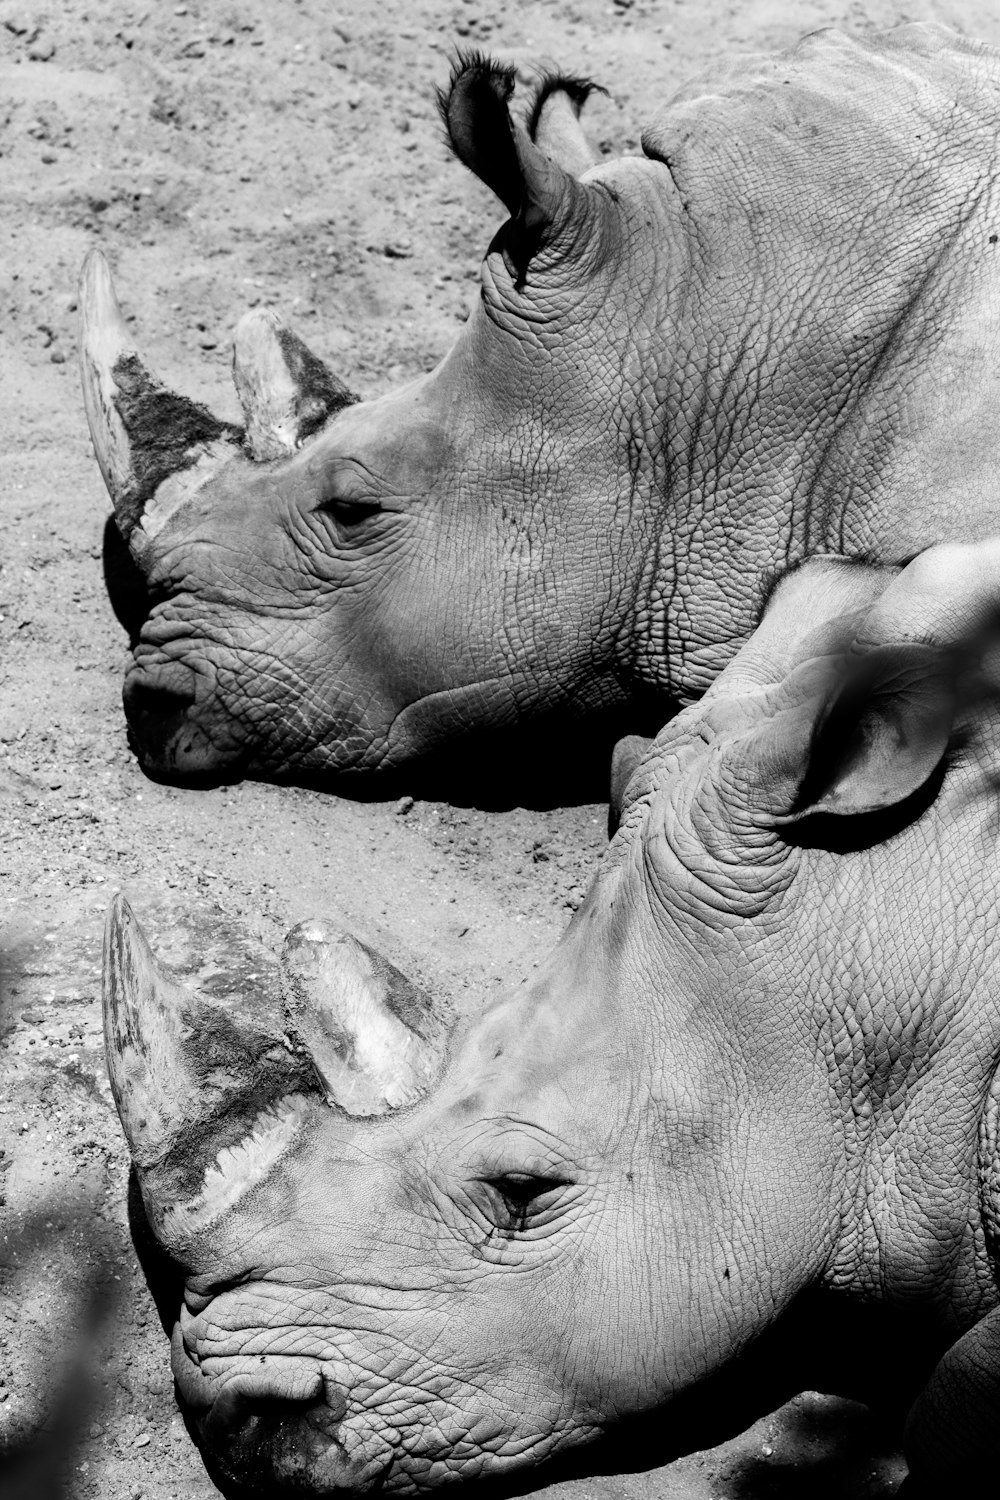 fotografia in scala di grigi di due rinoceronti